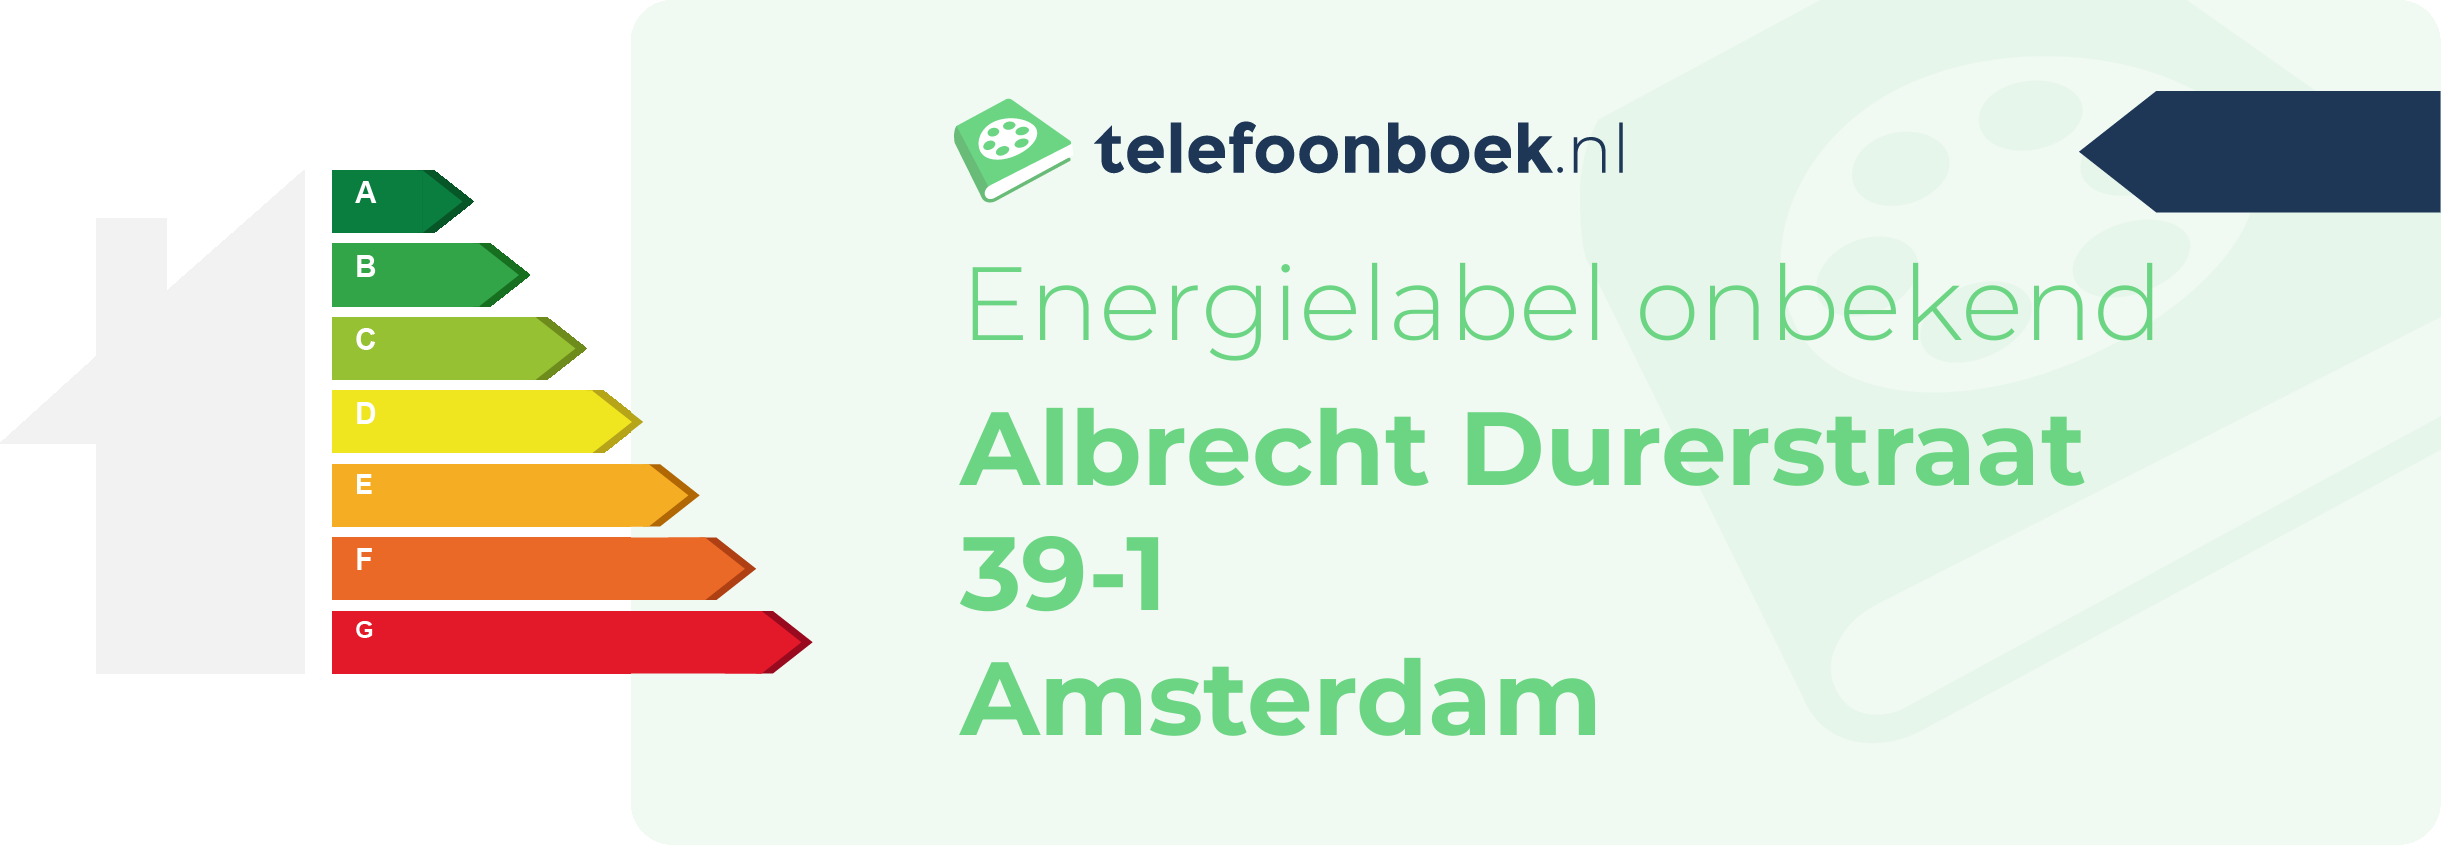 Energielabel Albrecht Durerstraat 39-1 Amsterdam